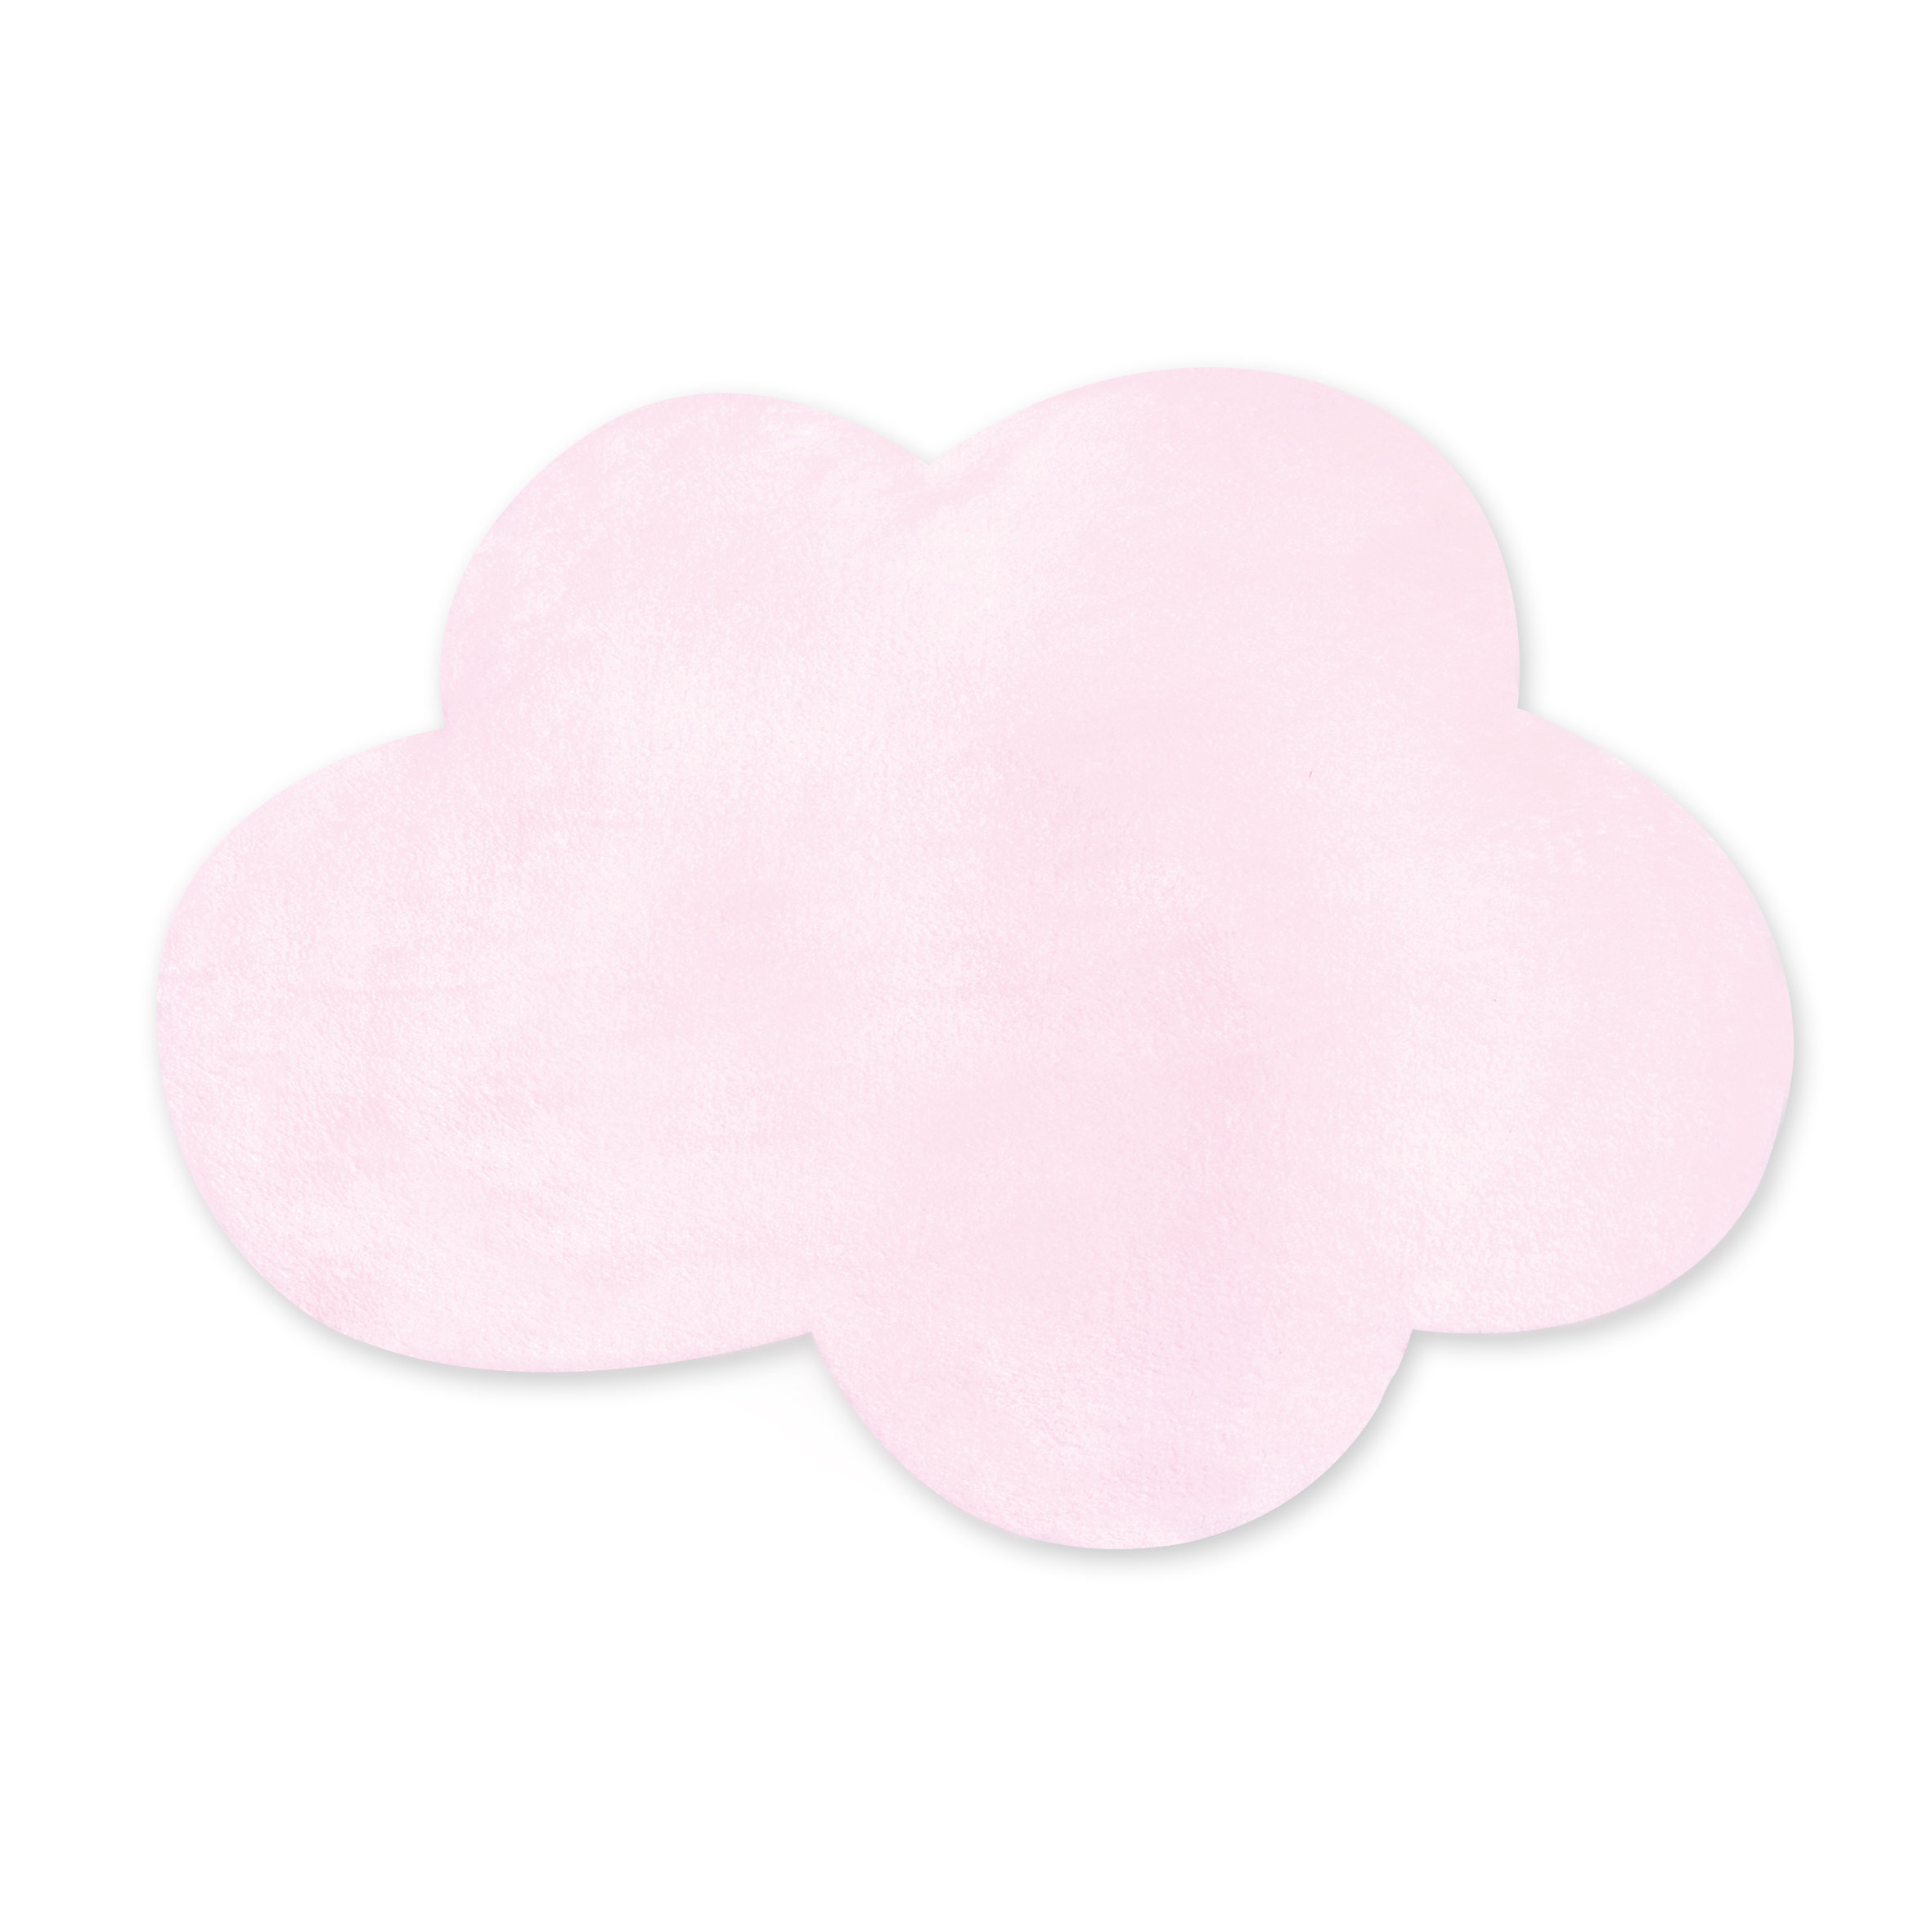 Alfombra decorativa Pady softy + antideslizante 85x110cm CLOUD Rosa pálido[AWARENESS]